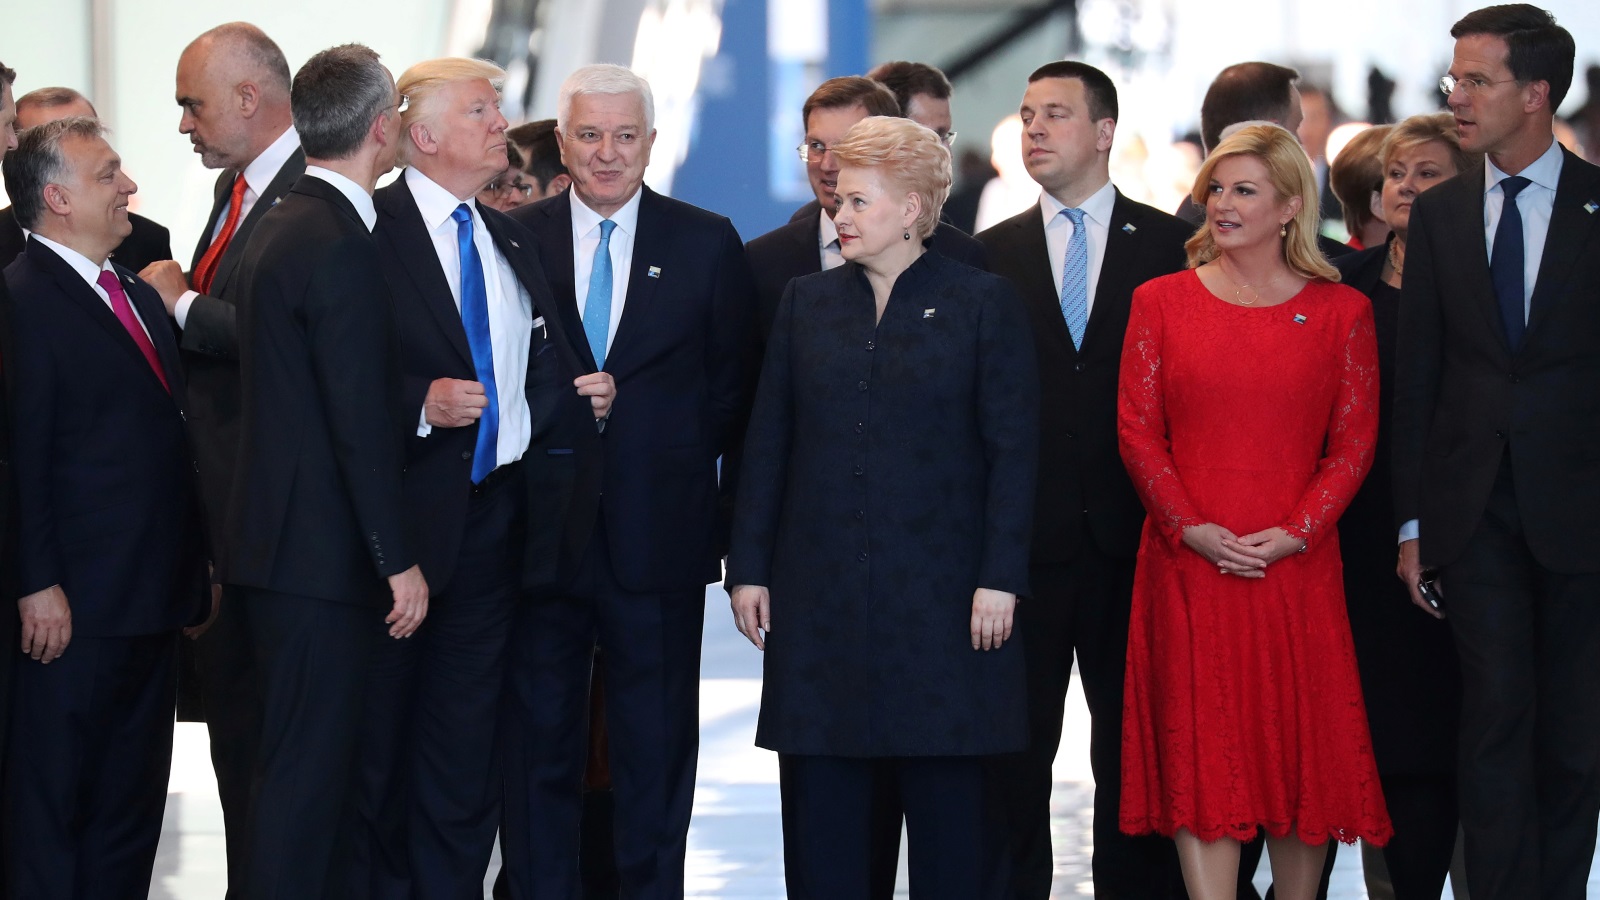 يمثل التأثير الرئيس لقرار ترمب -لا سيما بالنظر إلى مشاعره الفاترة تجاه الناتو وانسحابه السابق من اتفاقية الشراكة عبر المحيط الهادي-  في تخلي الولايات المتحدة عن القيادة على المسرح العالمي.